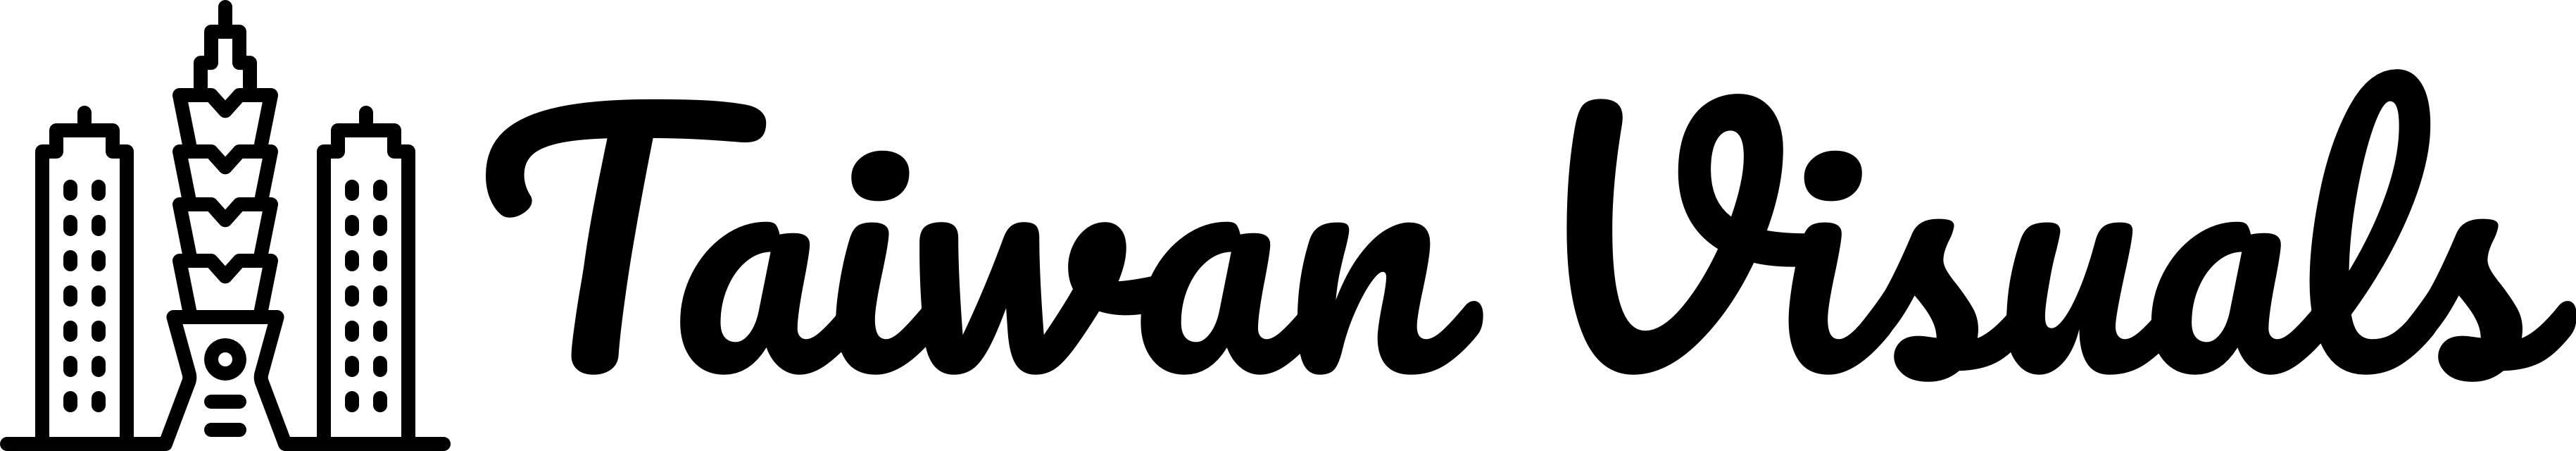 taiwan visuals logo